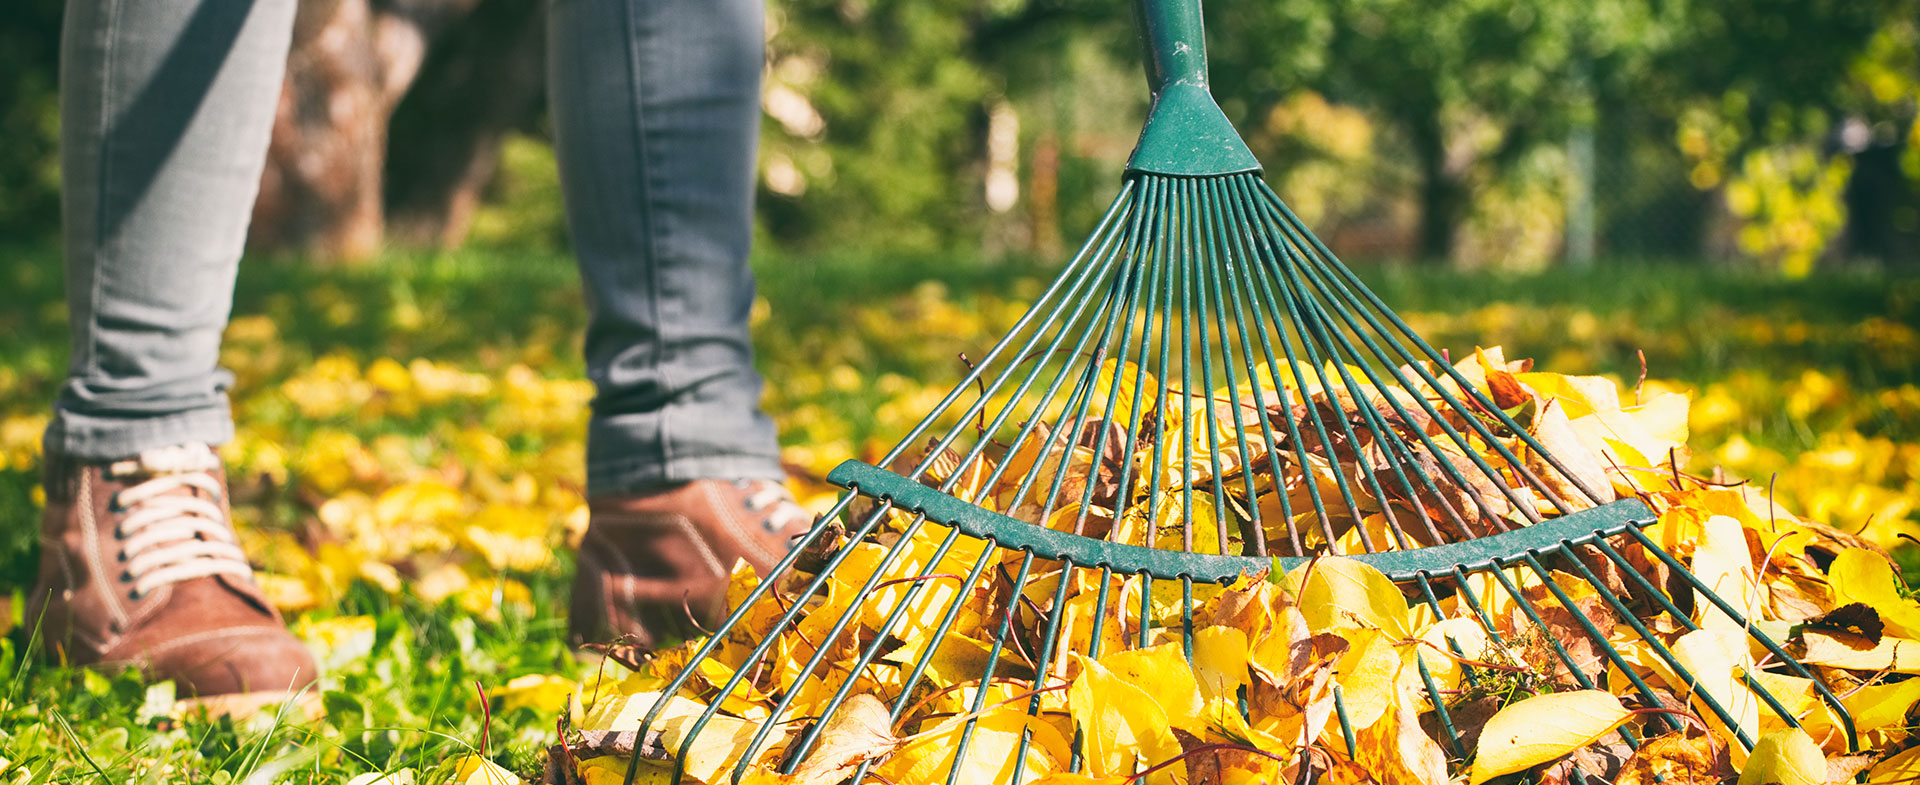 woman raking leaves